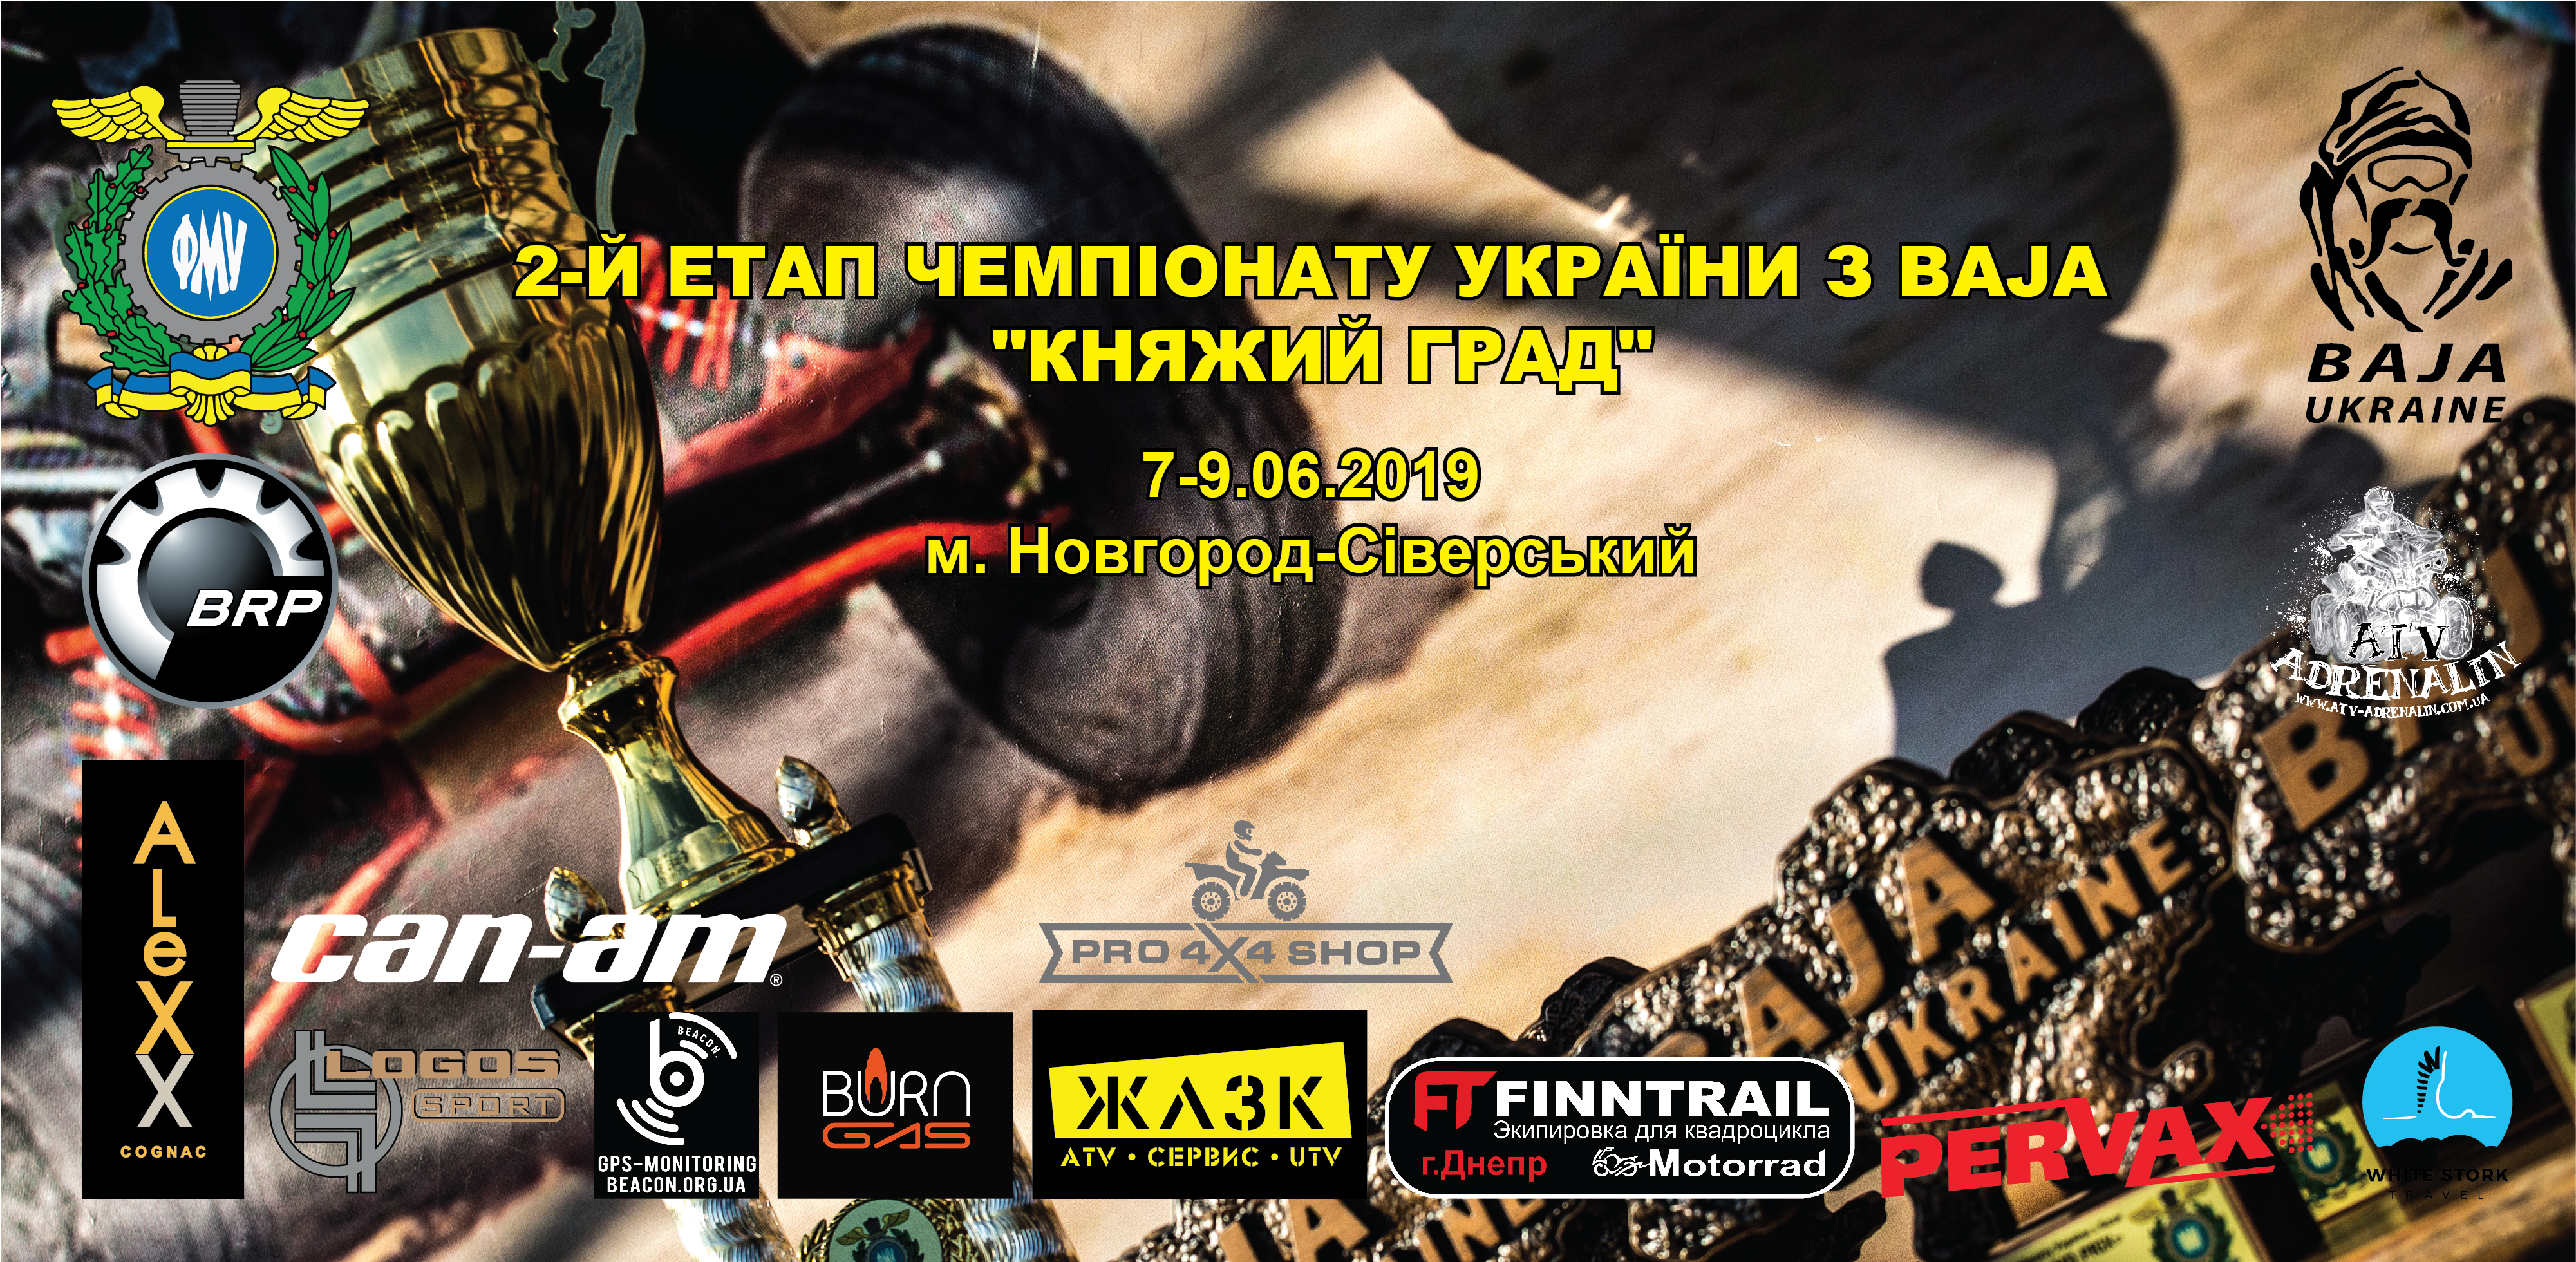 7-9.06 – 2-й етап Чемпіонату України з BAJA 2019 — «Княжий Град»!